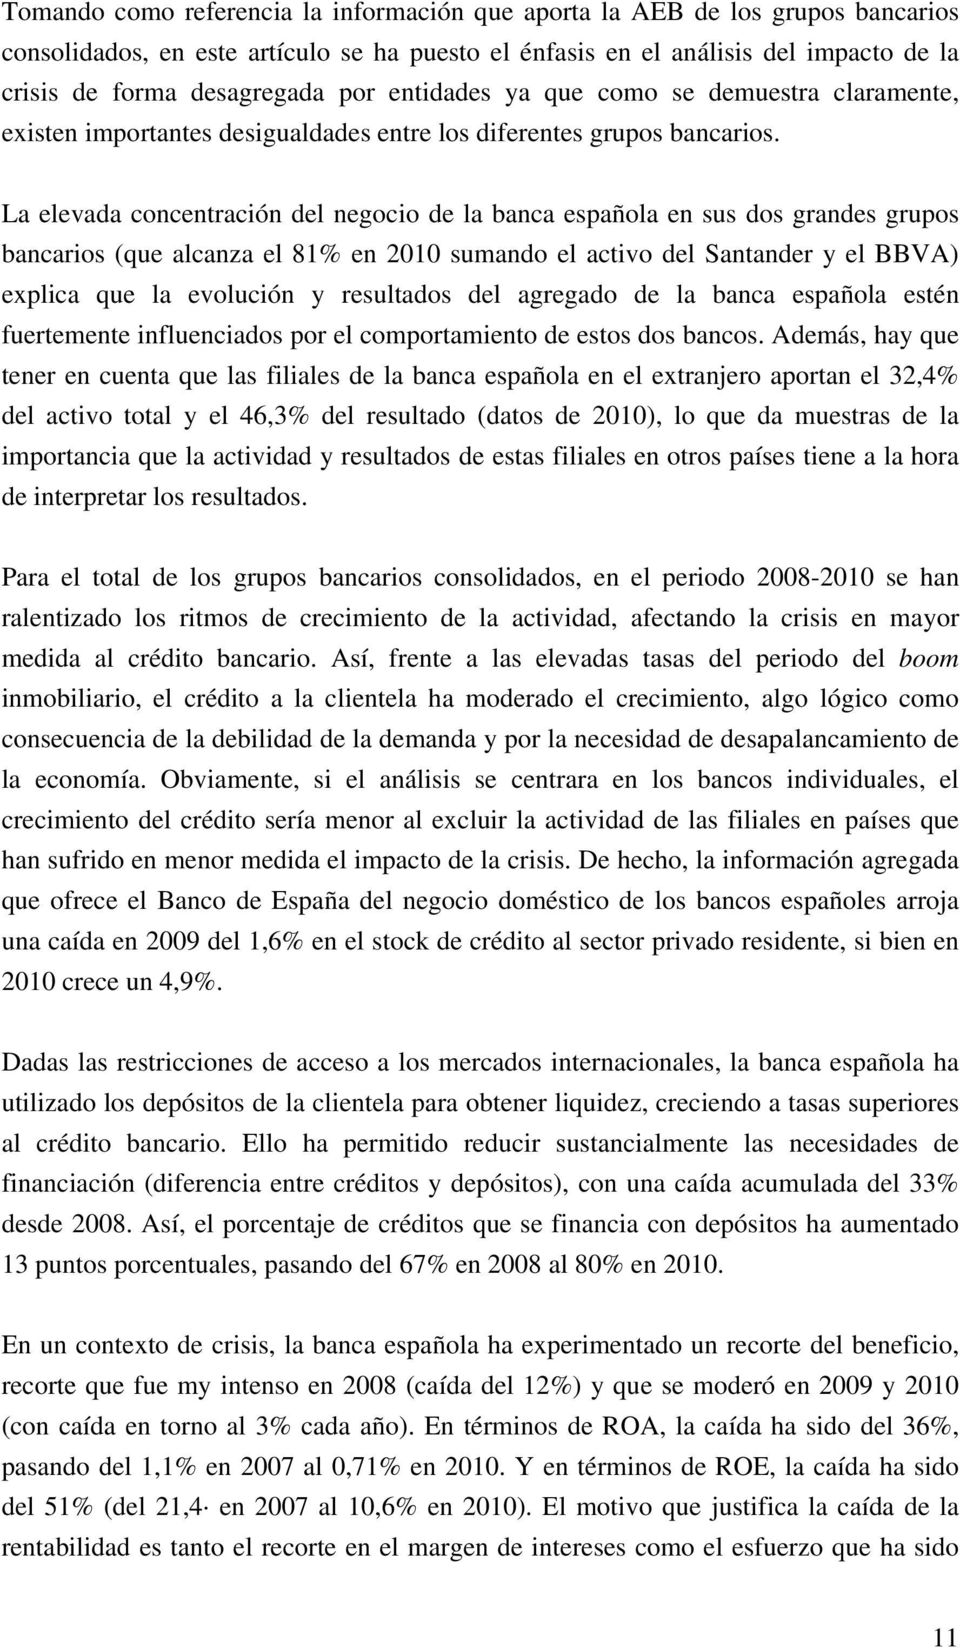 La elevada concentración del negocio de la banca española en sus dos grandes grupos bancarios (que alcanza el 81% en 2010 sumando el activo del Santander y el BBVA) explica que la evolución y